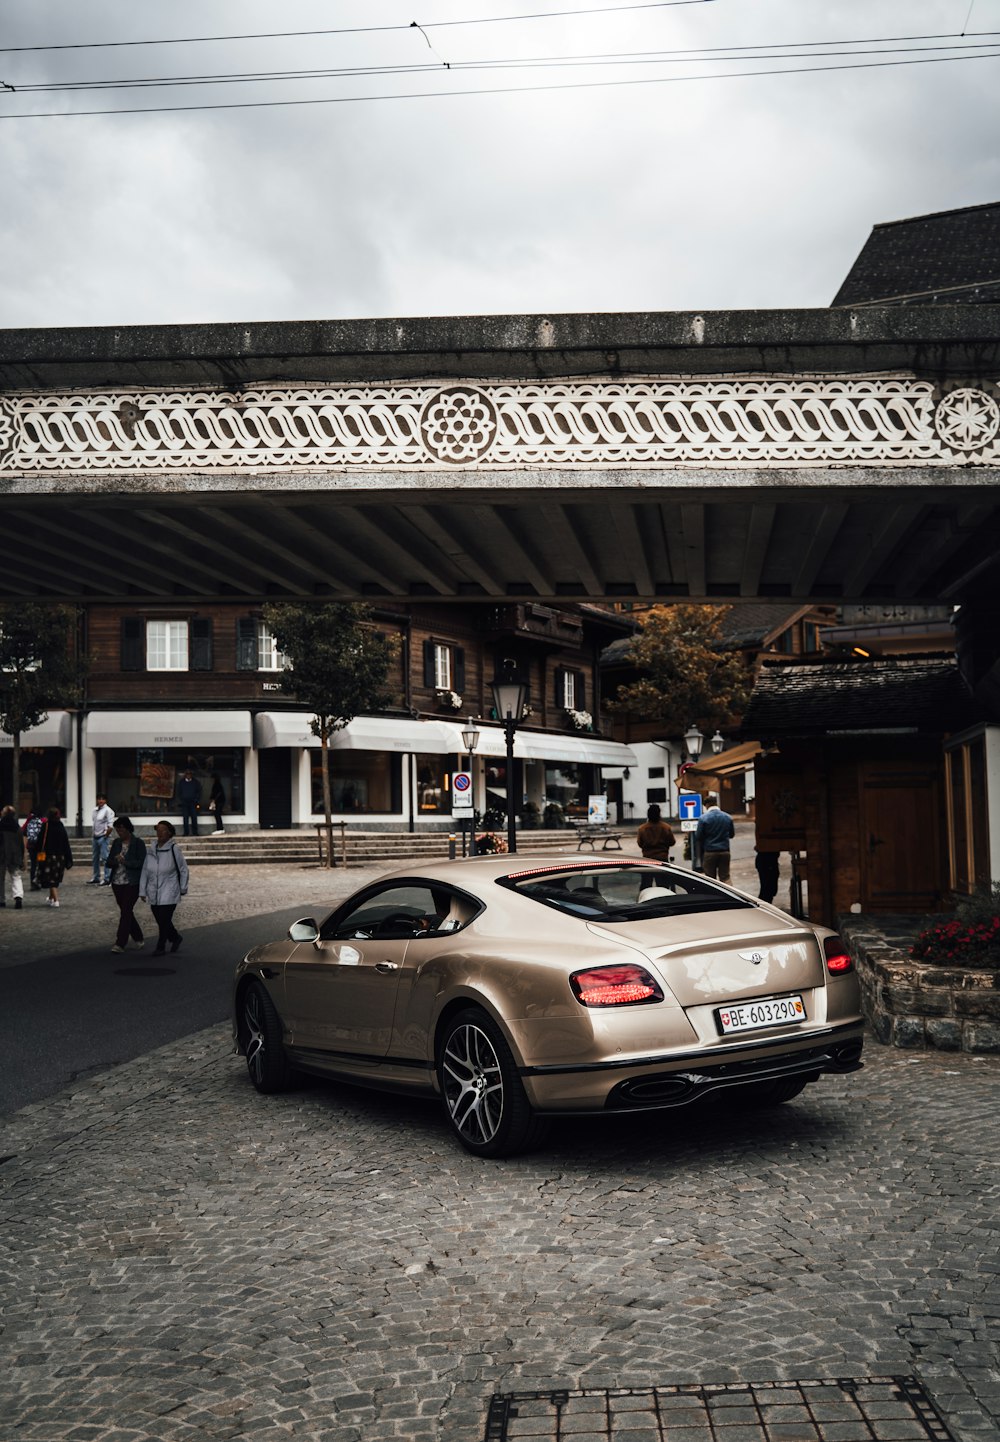 Mercedes Benz coupé blanche garée près d’un immeuble pendant la journée